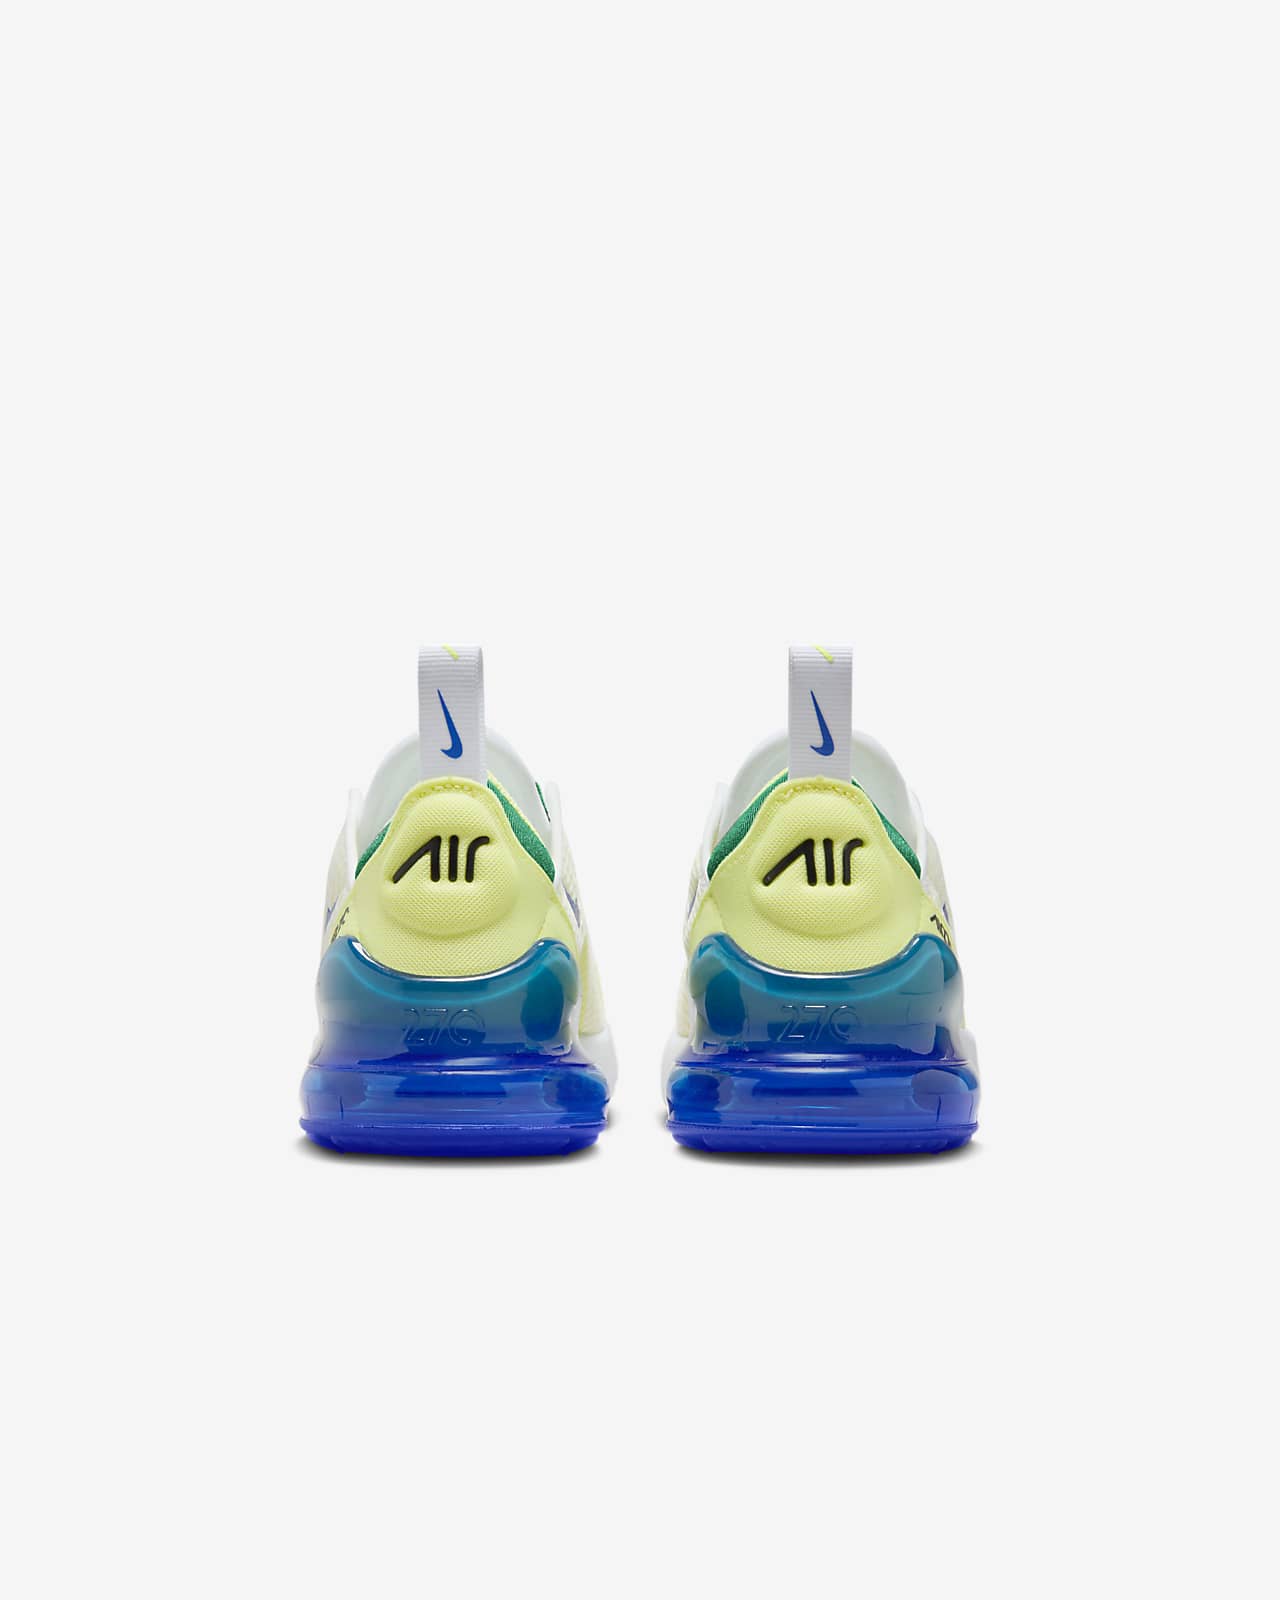 Shoes Nike AIR MAX 270 